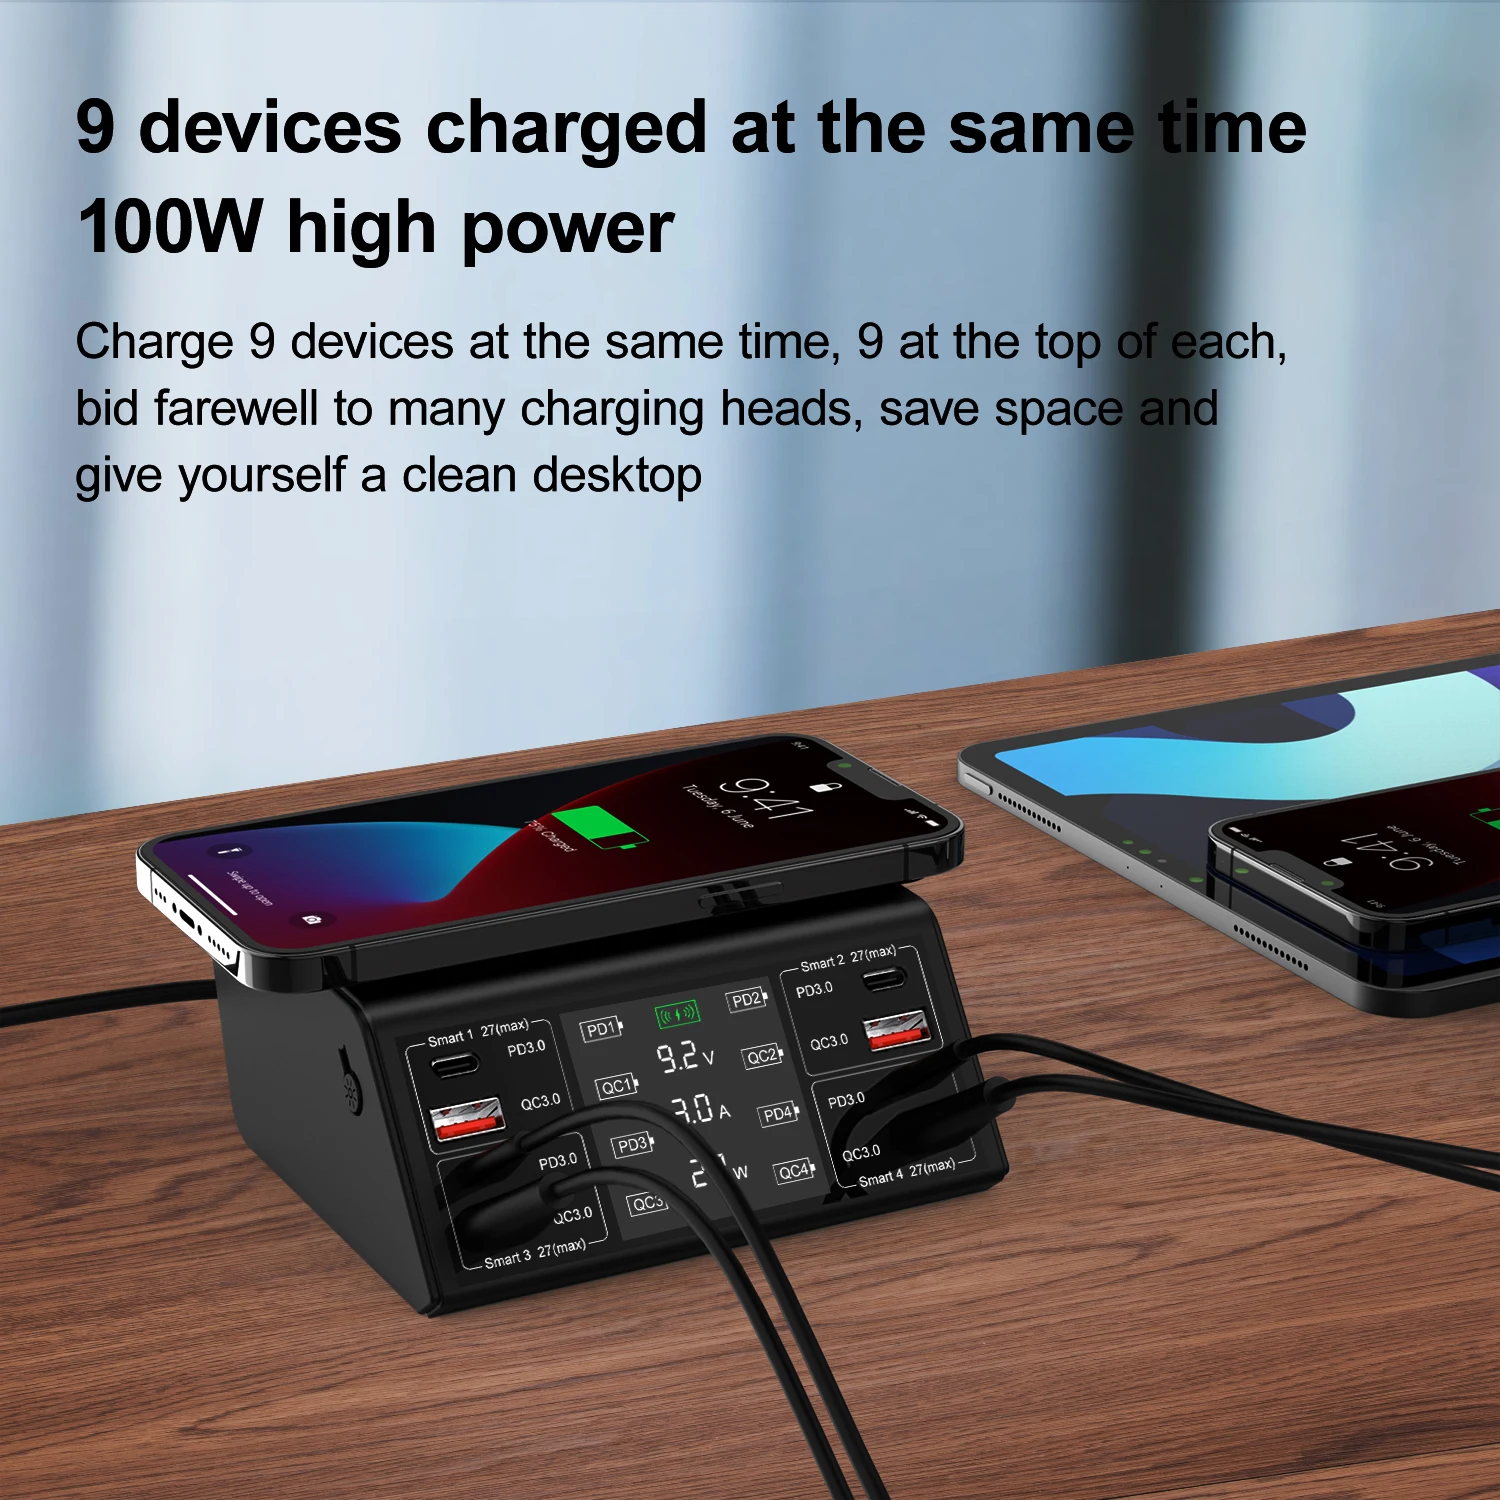 ANDOOLEX Cep Telefonu Şarj Cihazı 4 Port Hızlı Şarj Cihazı 100W Toplam Güç LED Akıllı dijital ekran Ekran Görüntü 4